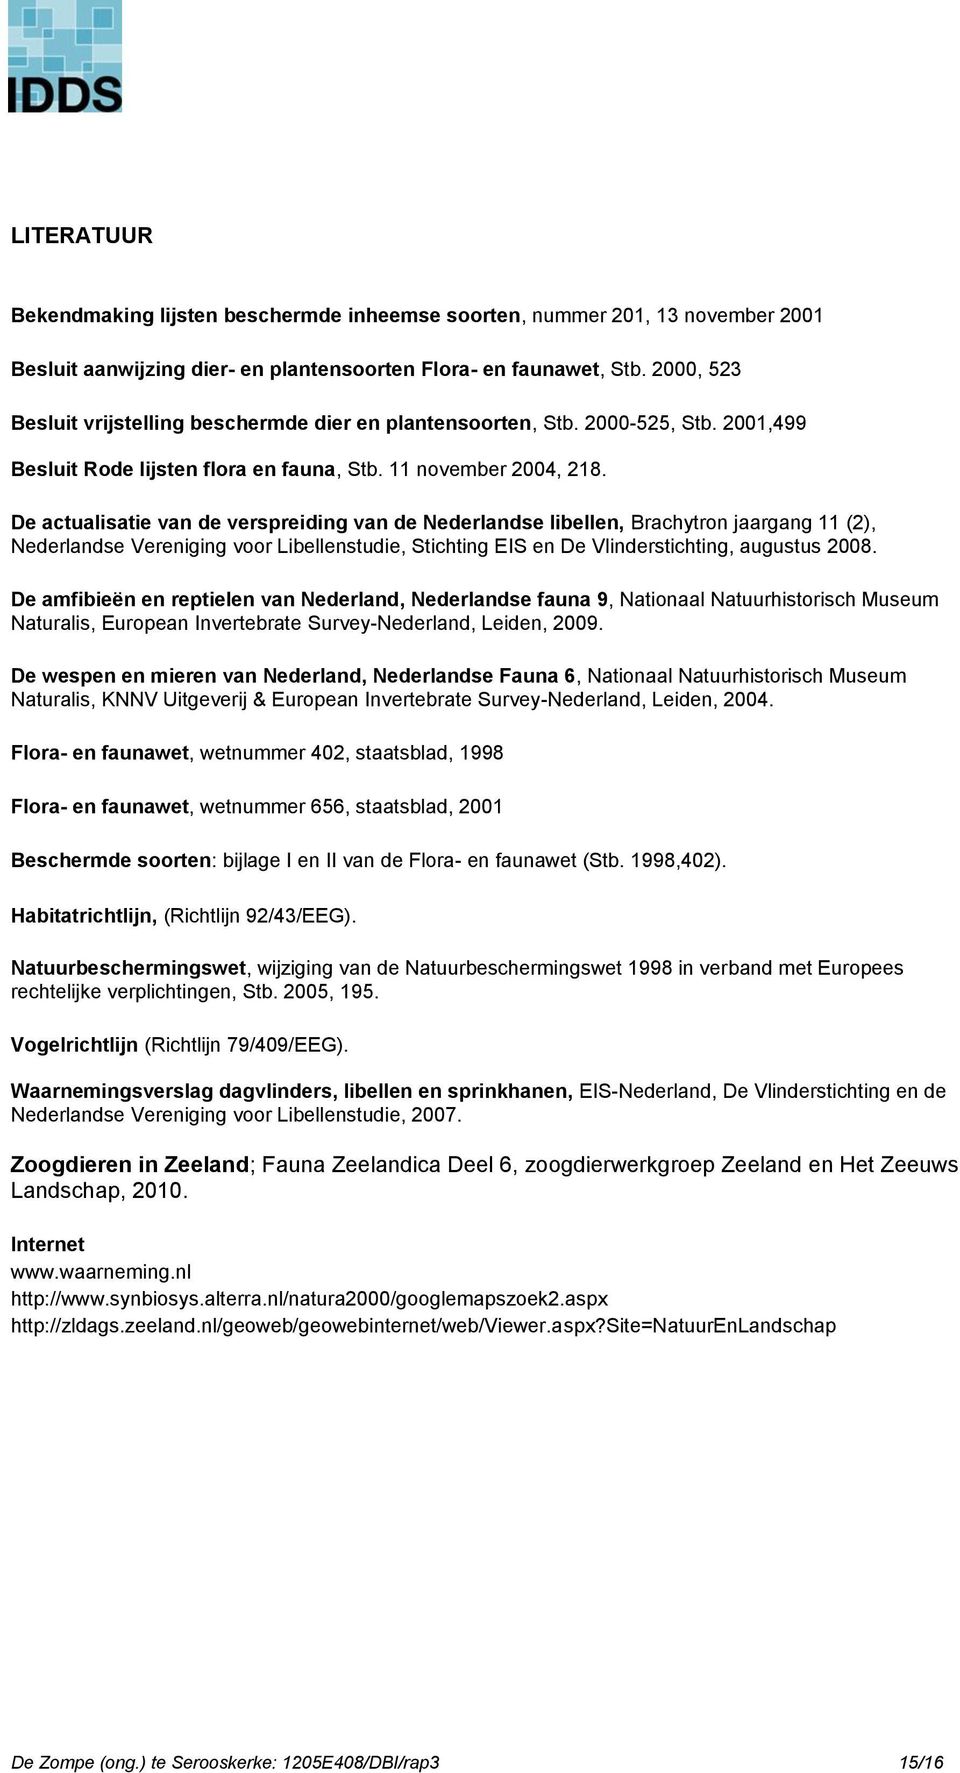 De actualisatie van de verspreiding van de Nederlandse libellen, Brachytron jaargang 11 (2), Nederlandse Vereniging voor Libellenstudie, Stichting EIS en De Vlinderstichting, augustus 2008.